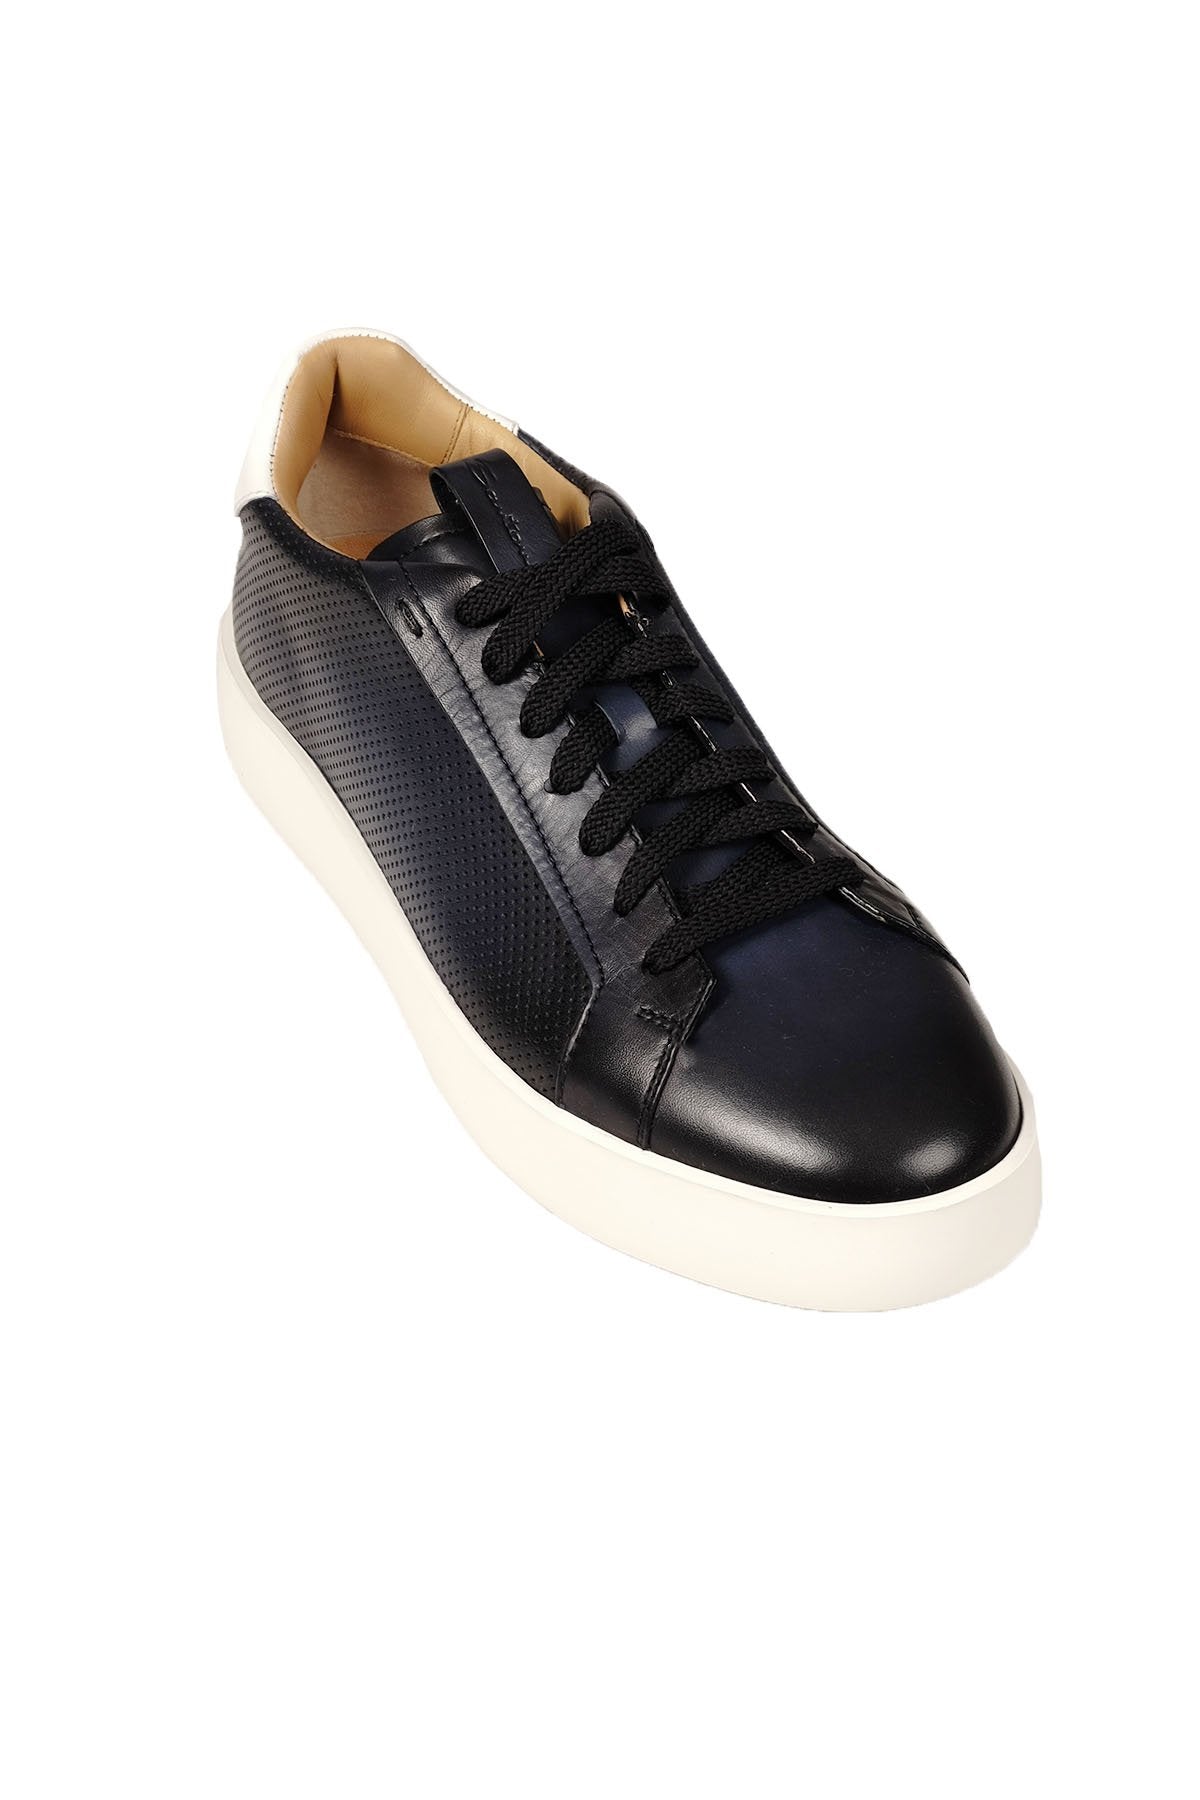 Santoni Baskılı Deri Sneaker Ayakkabı-Libas Trendy Fashion Store